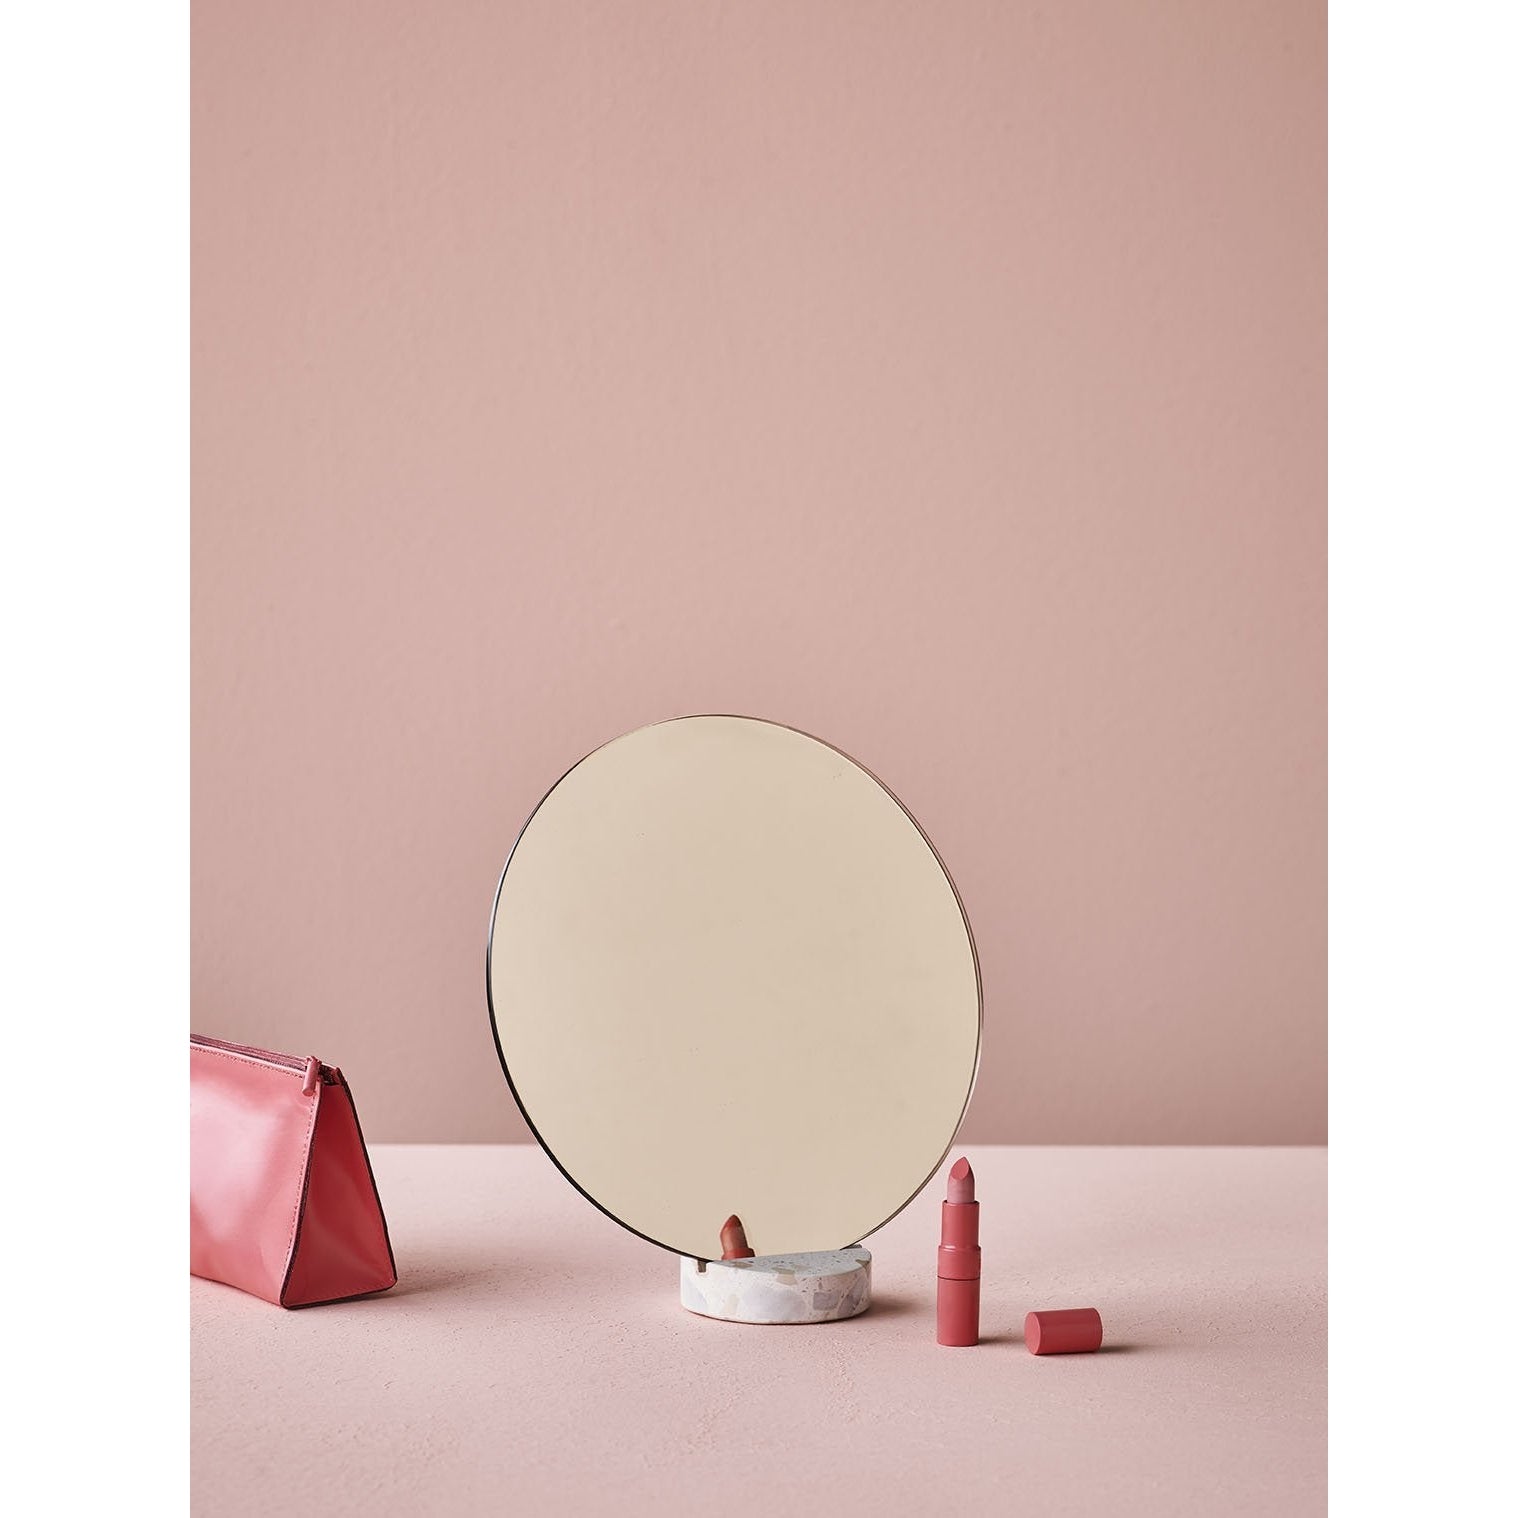 Lucie Kaas Erat spegel rosa, 25 cm